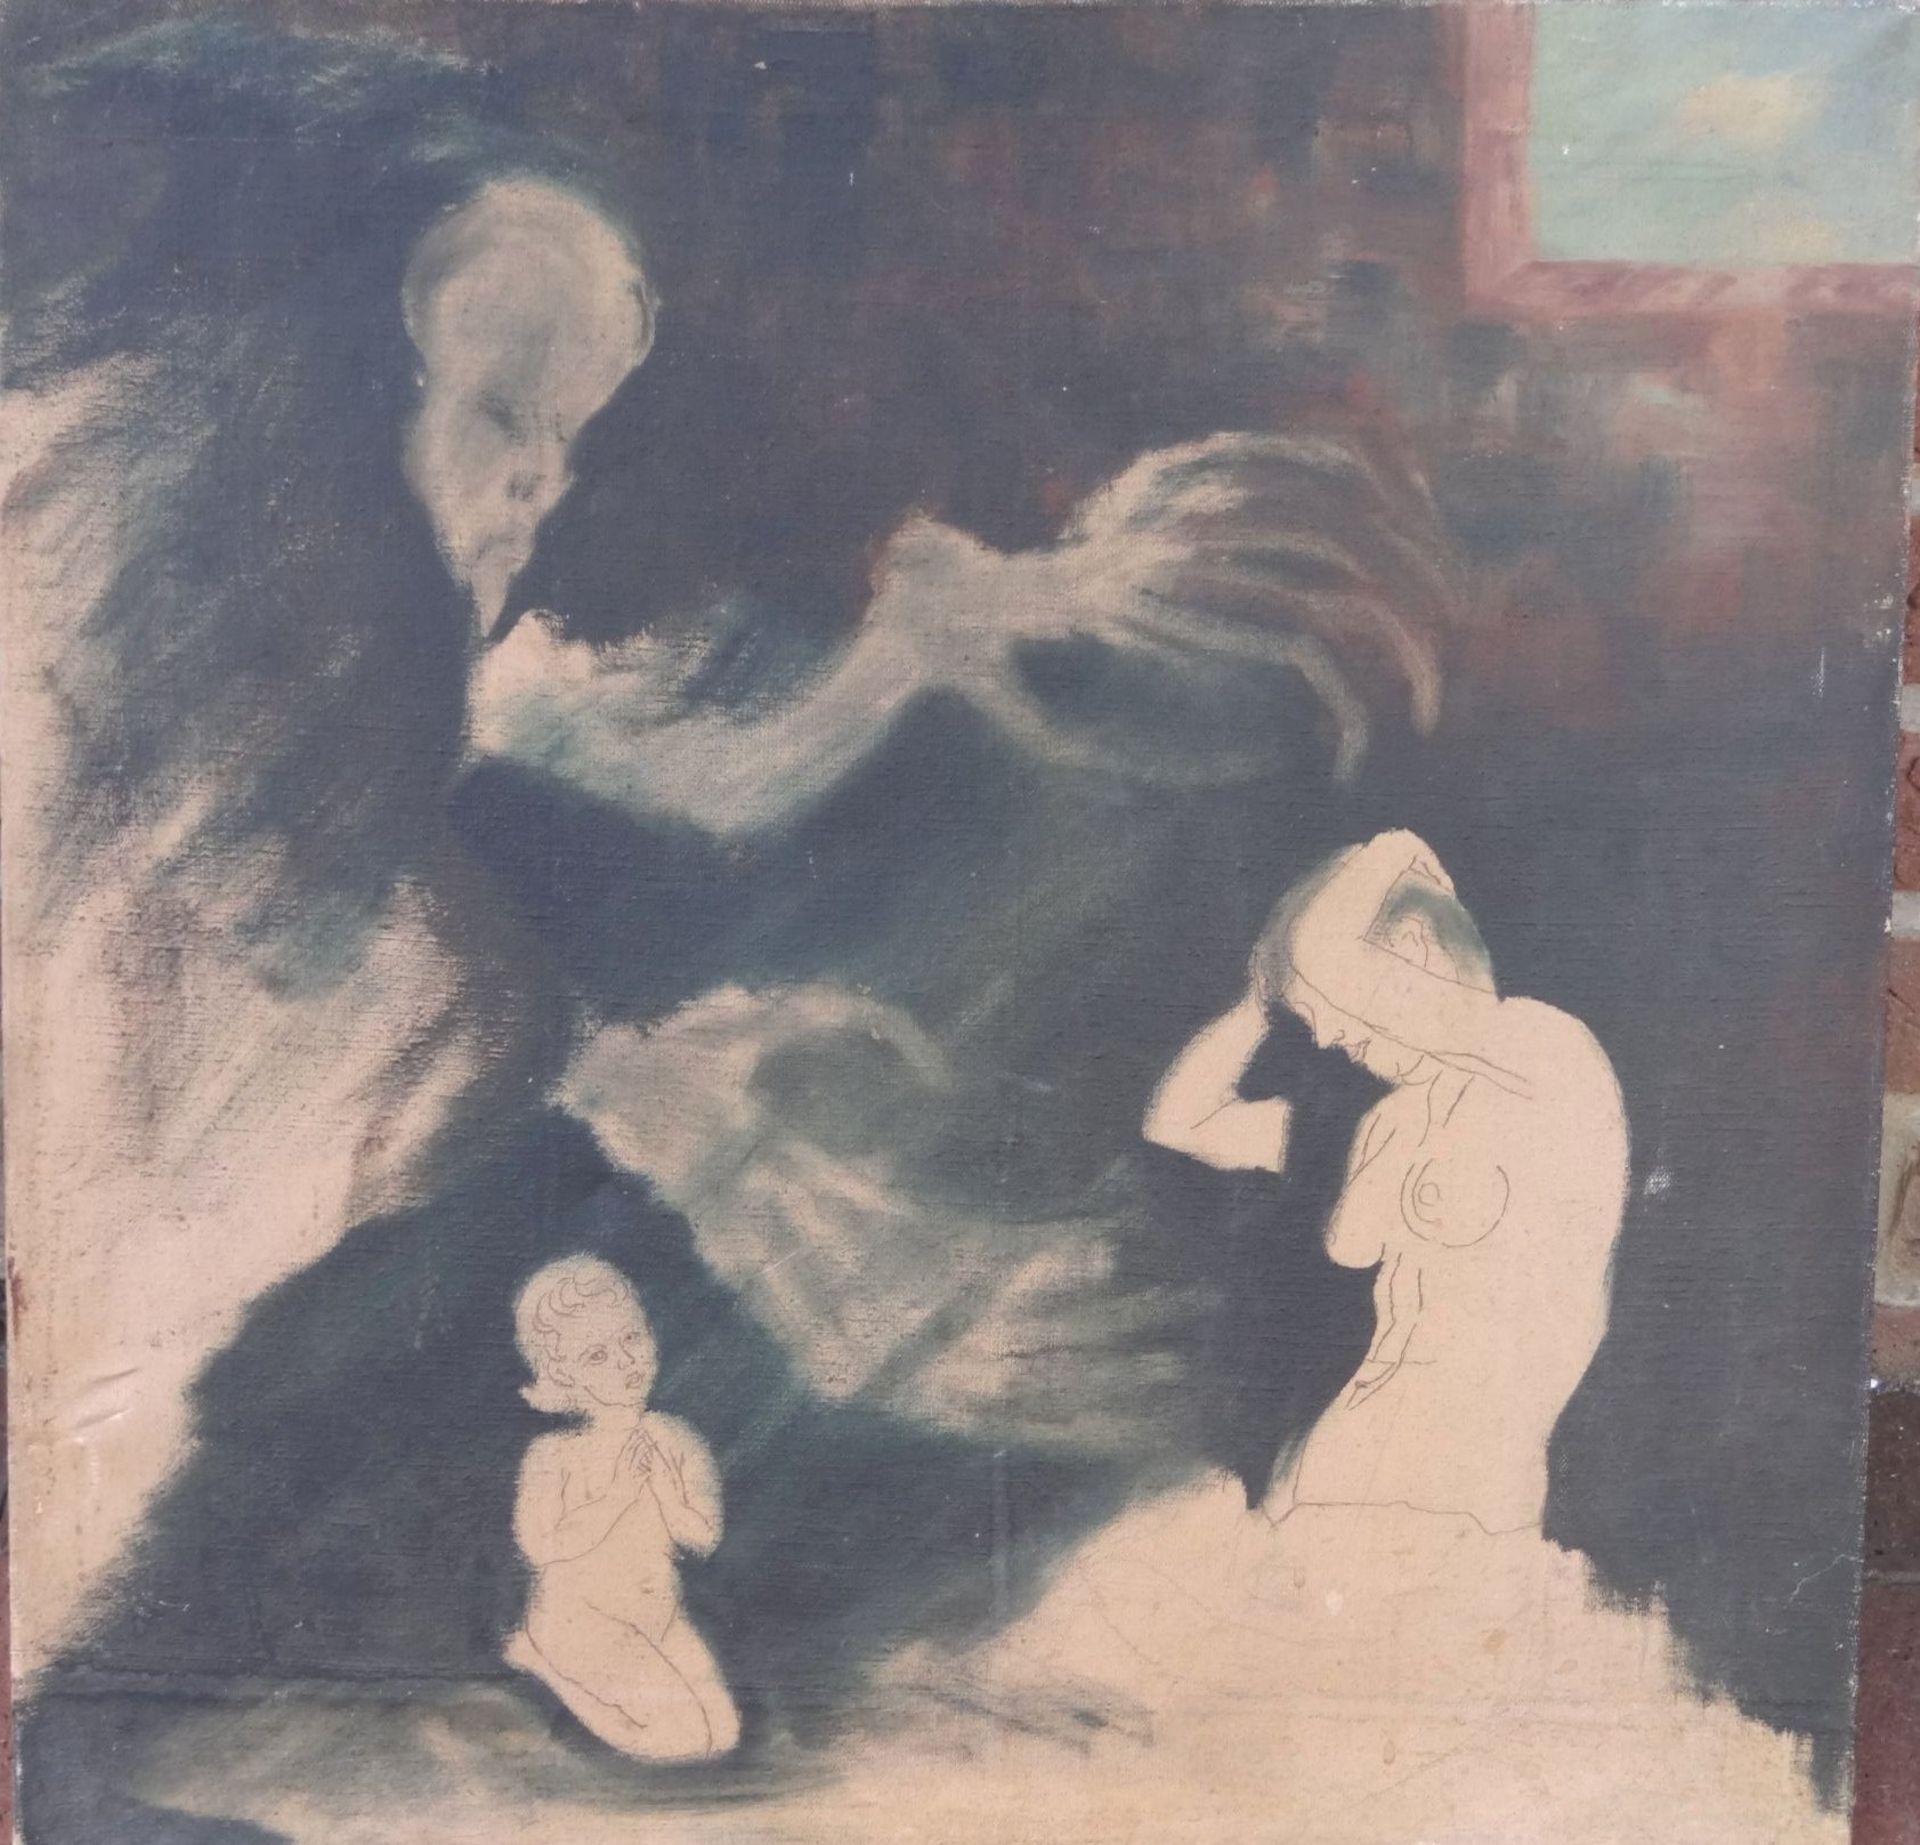 anonyme Traumszene, Öl/Leinen, 60x60 cm, wohl Willy KNOOP (1888-1966)- - -22.61 % buyer's premium on